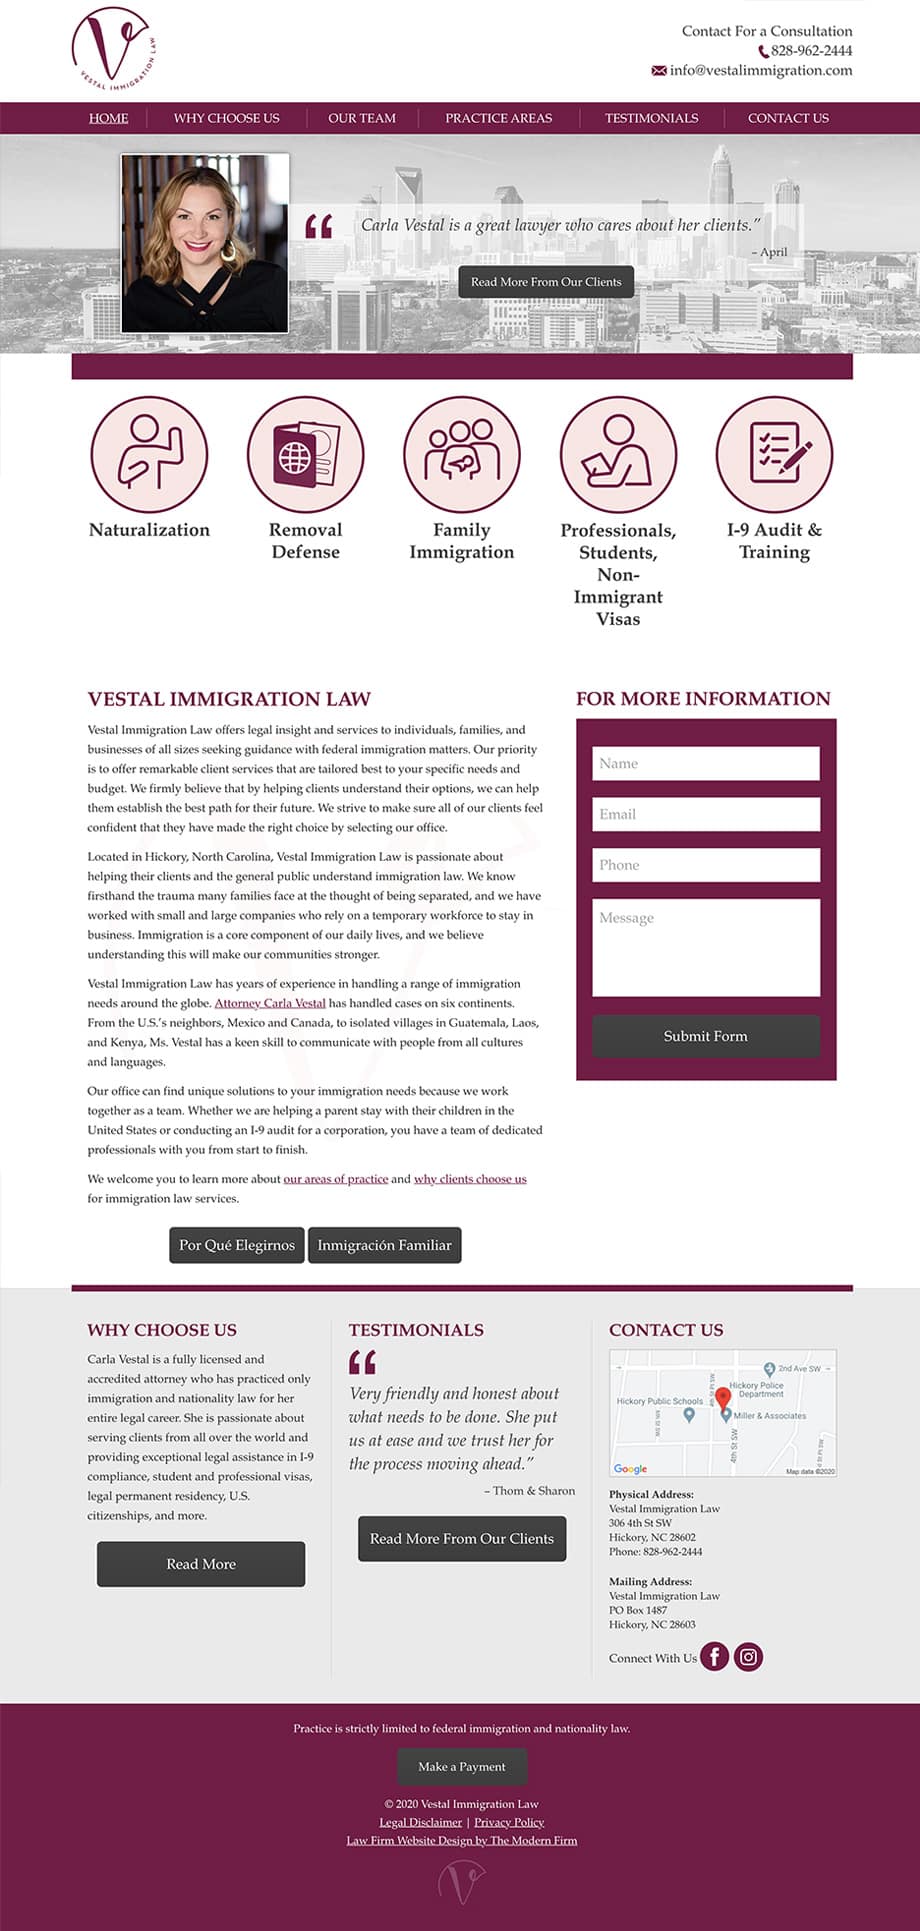 Law Firm Website Design for Vestal Immigration Law